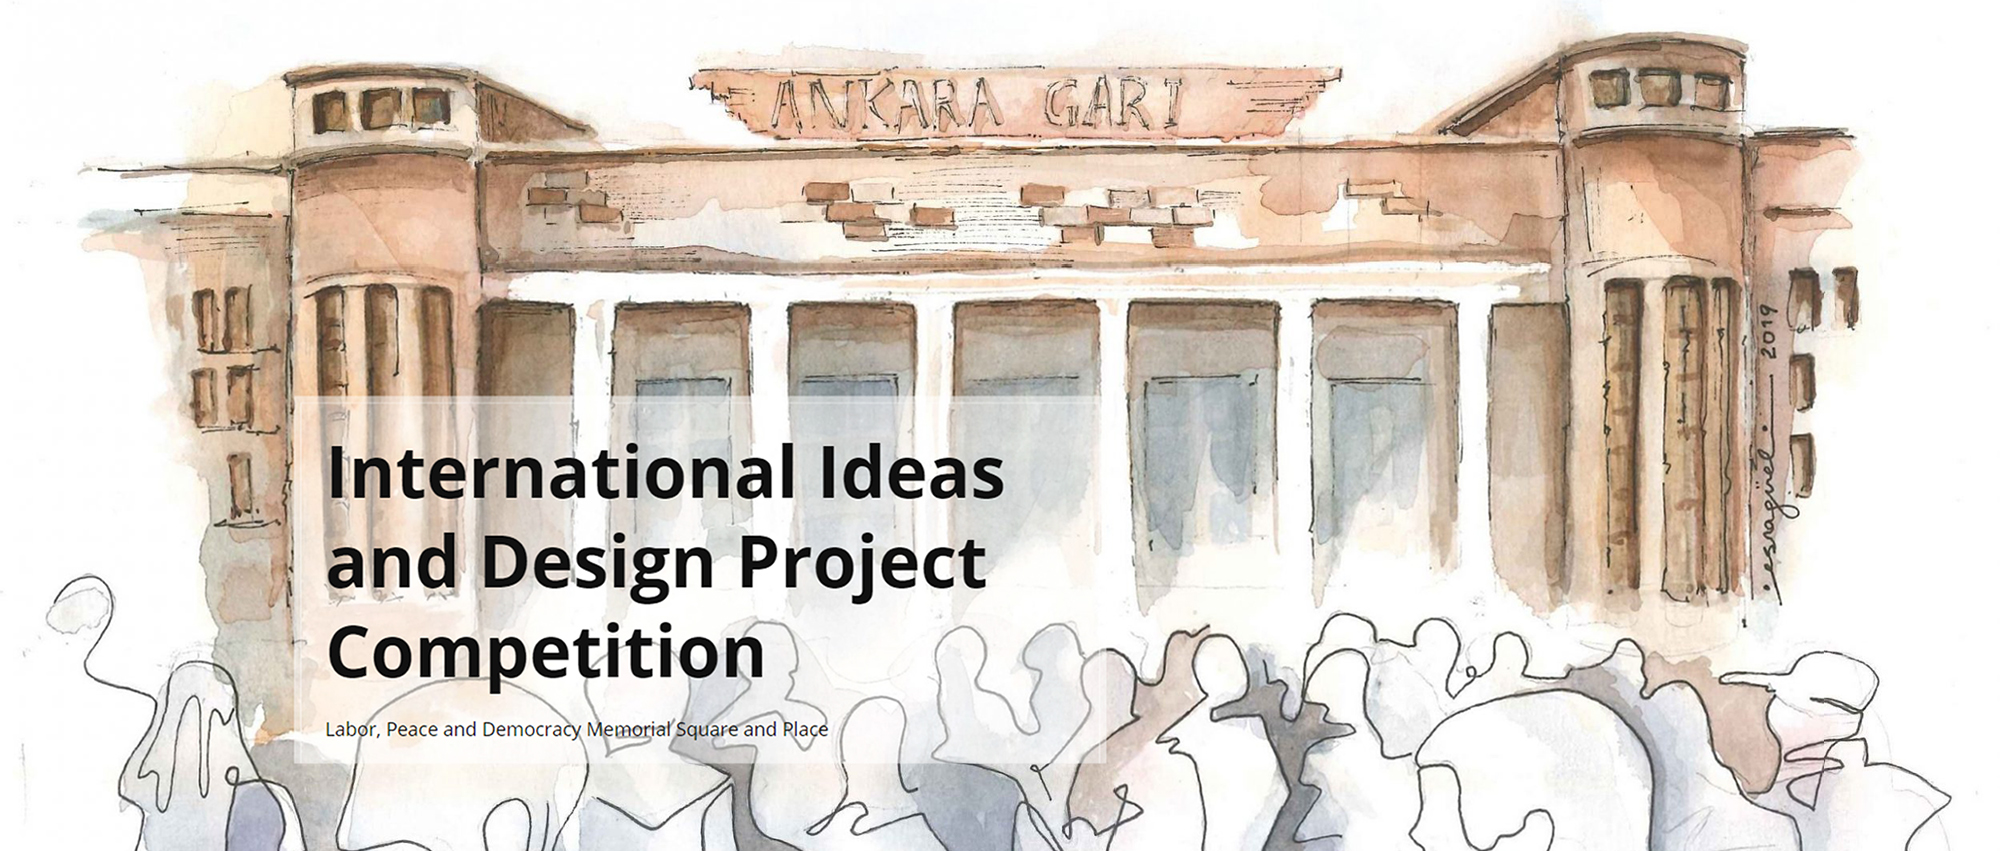 劳动、和平与民主纪念广场及场所项目国际创意设计竞赛